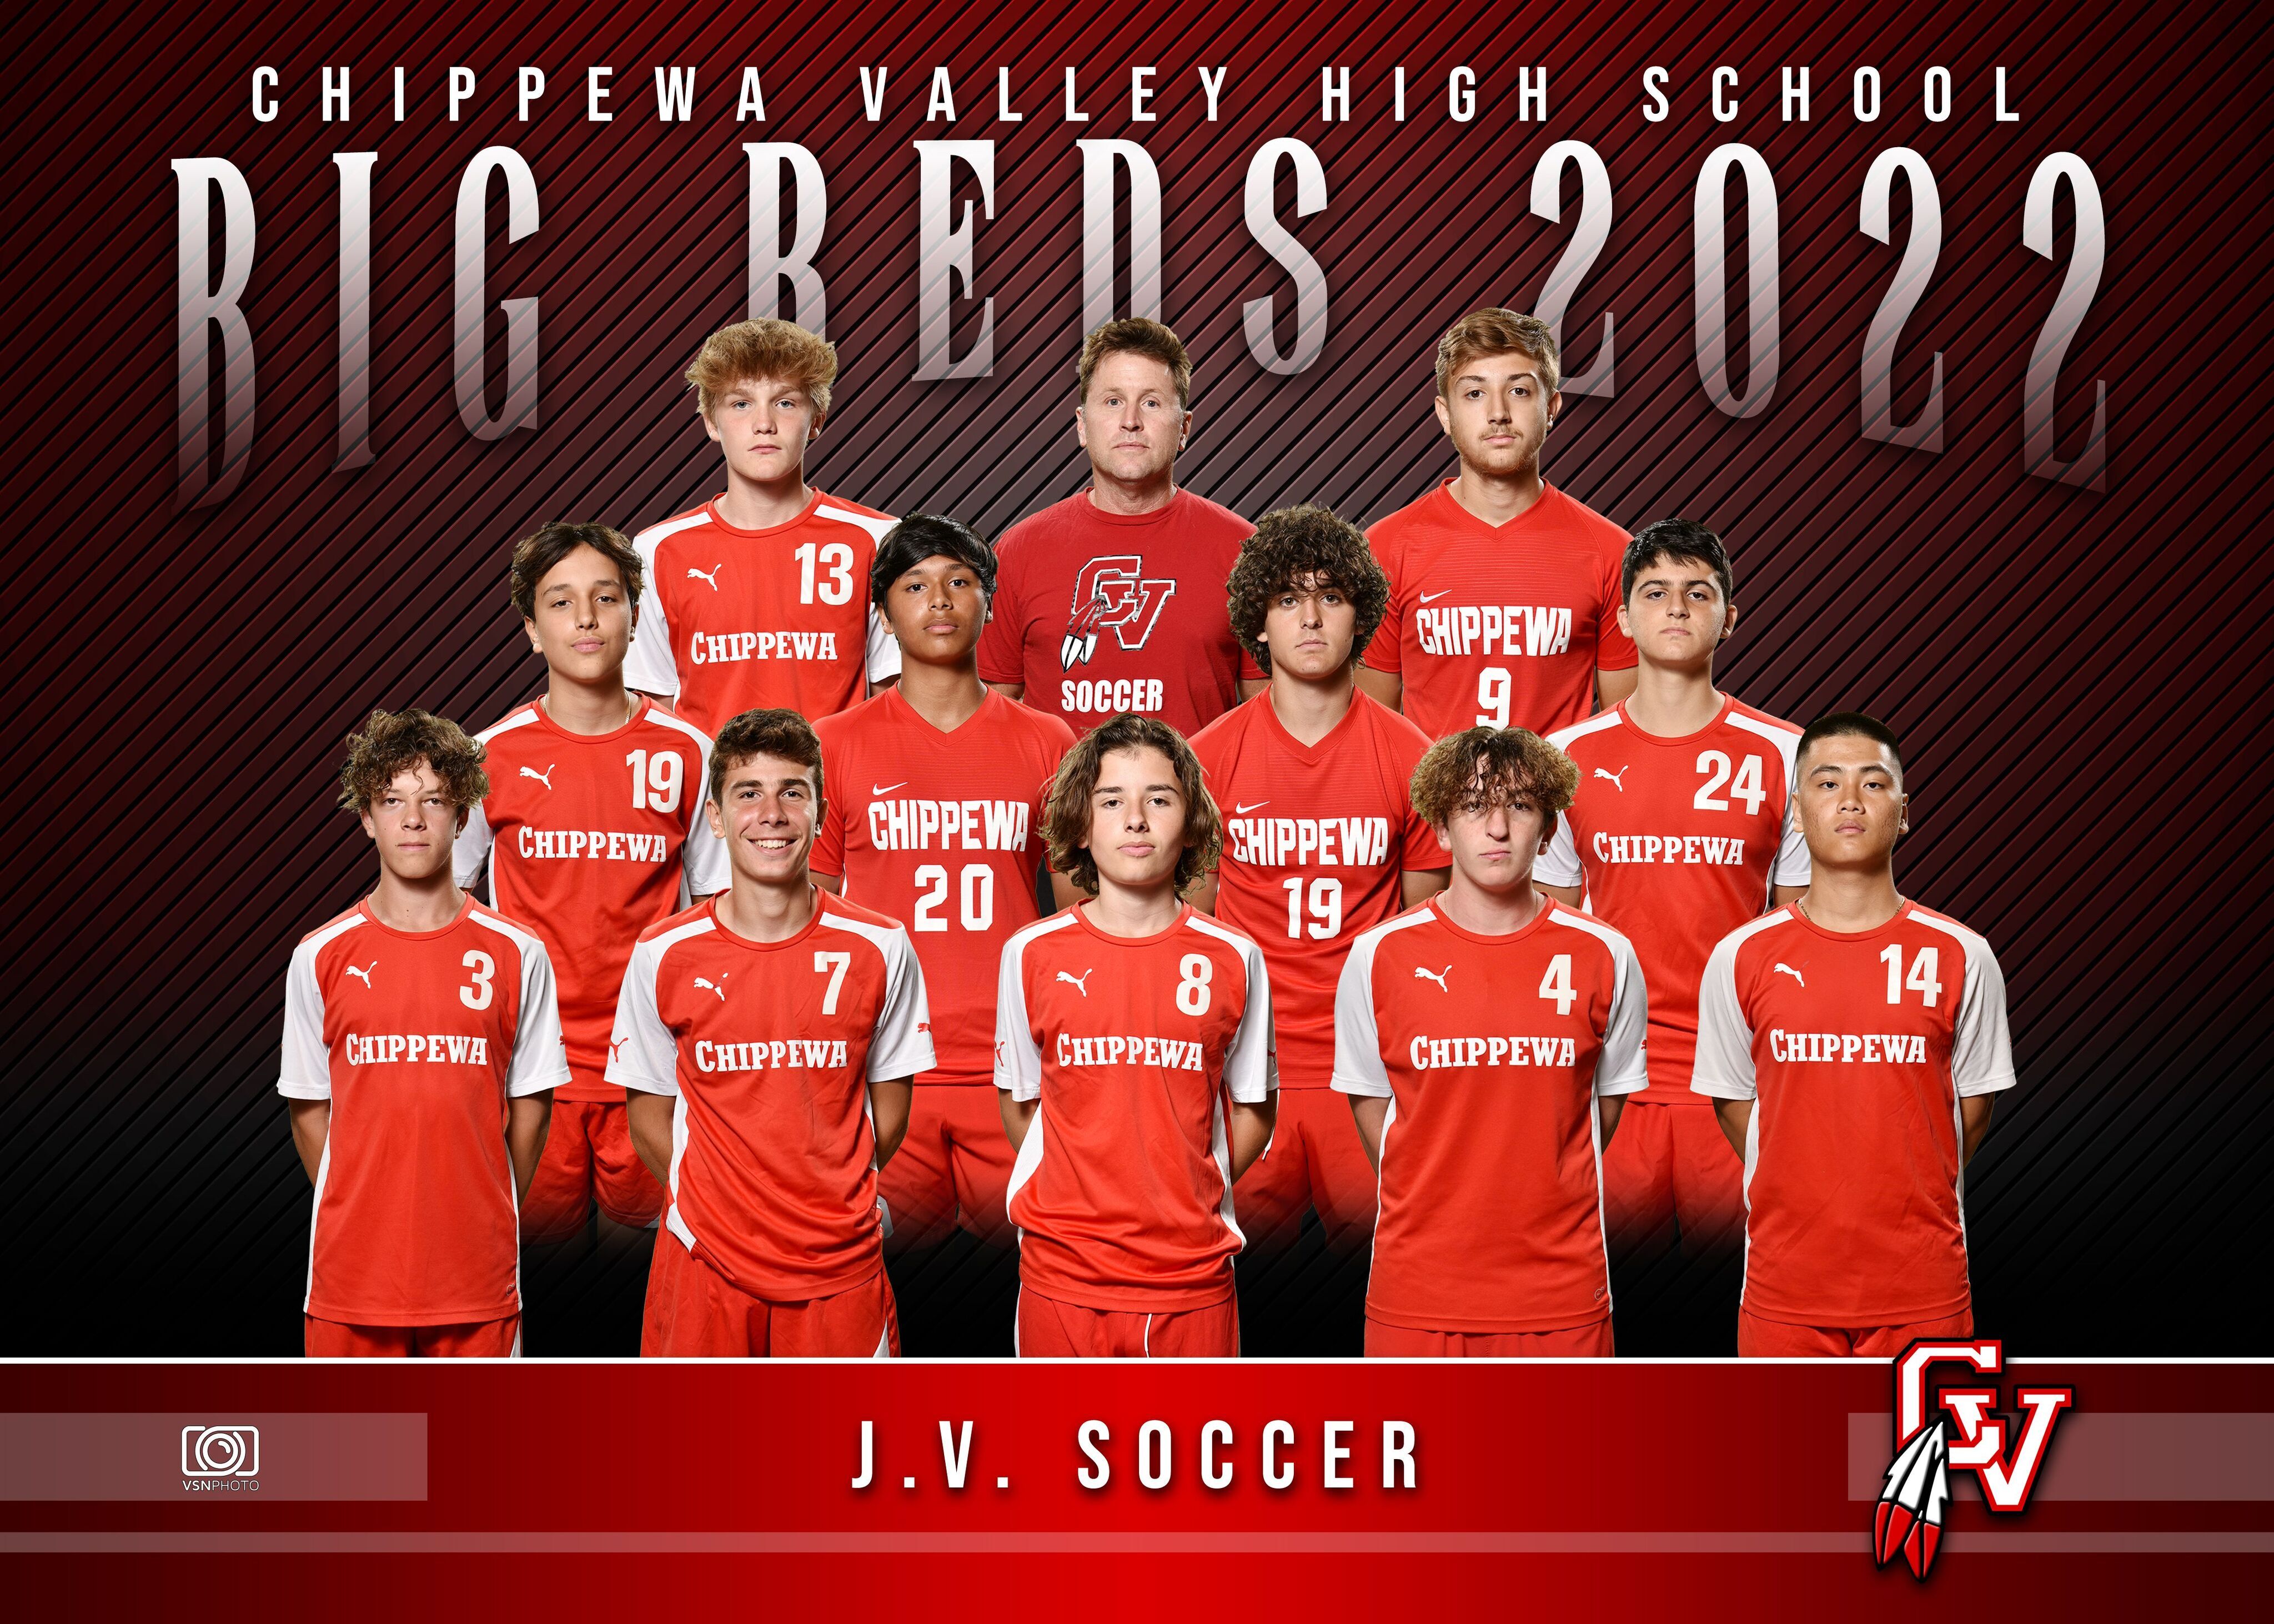 JV Soccer